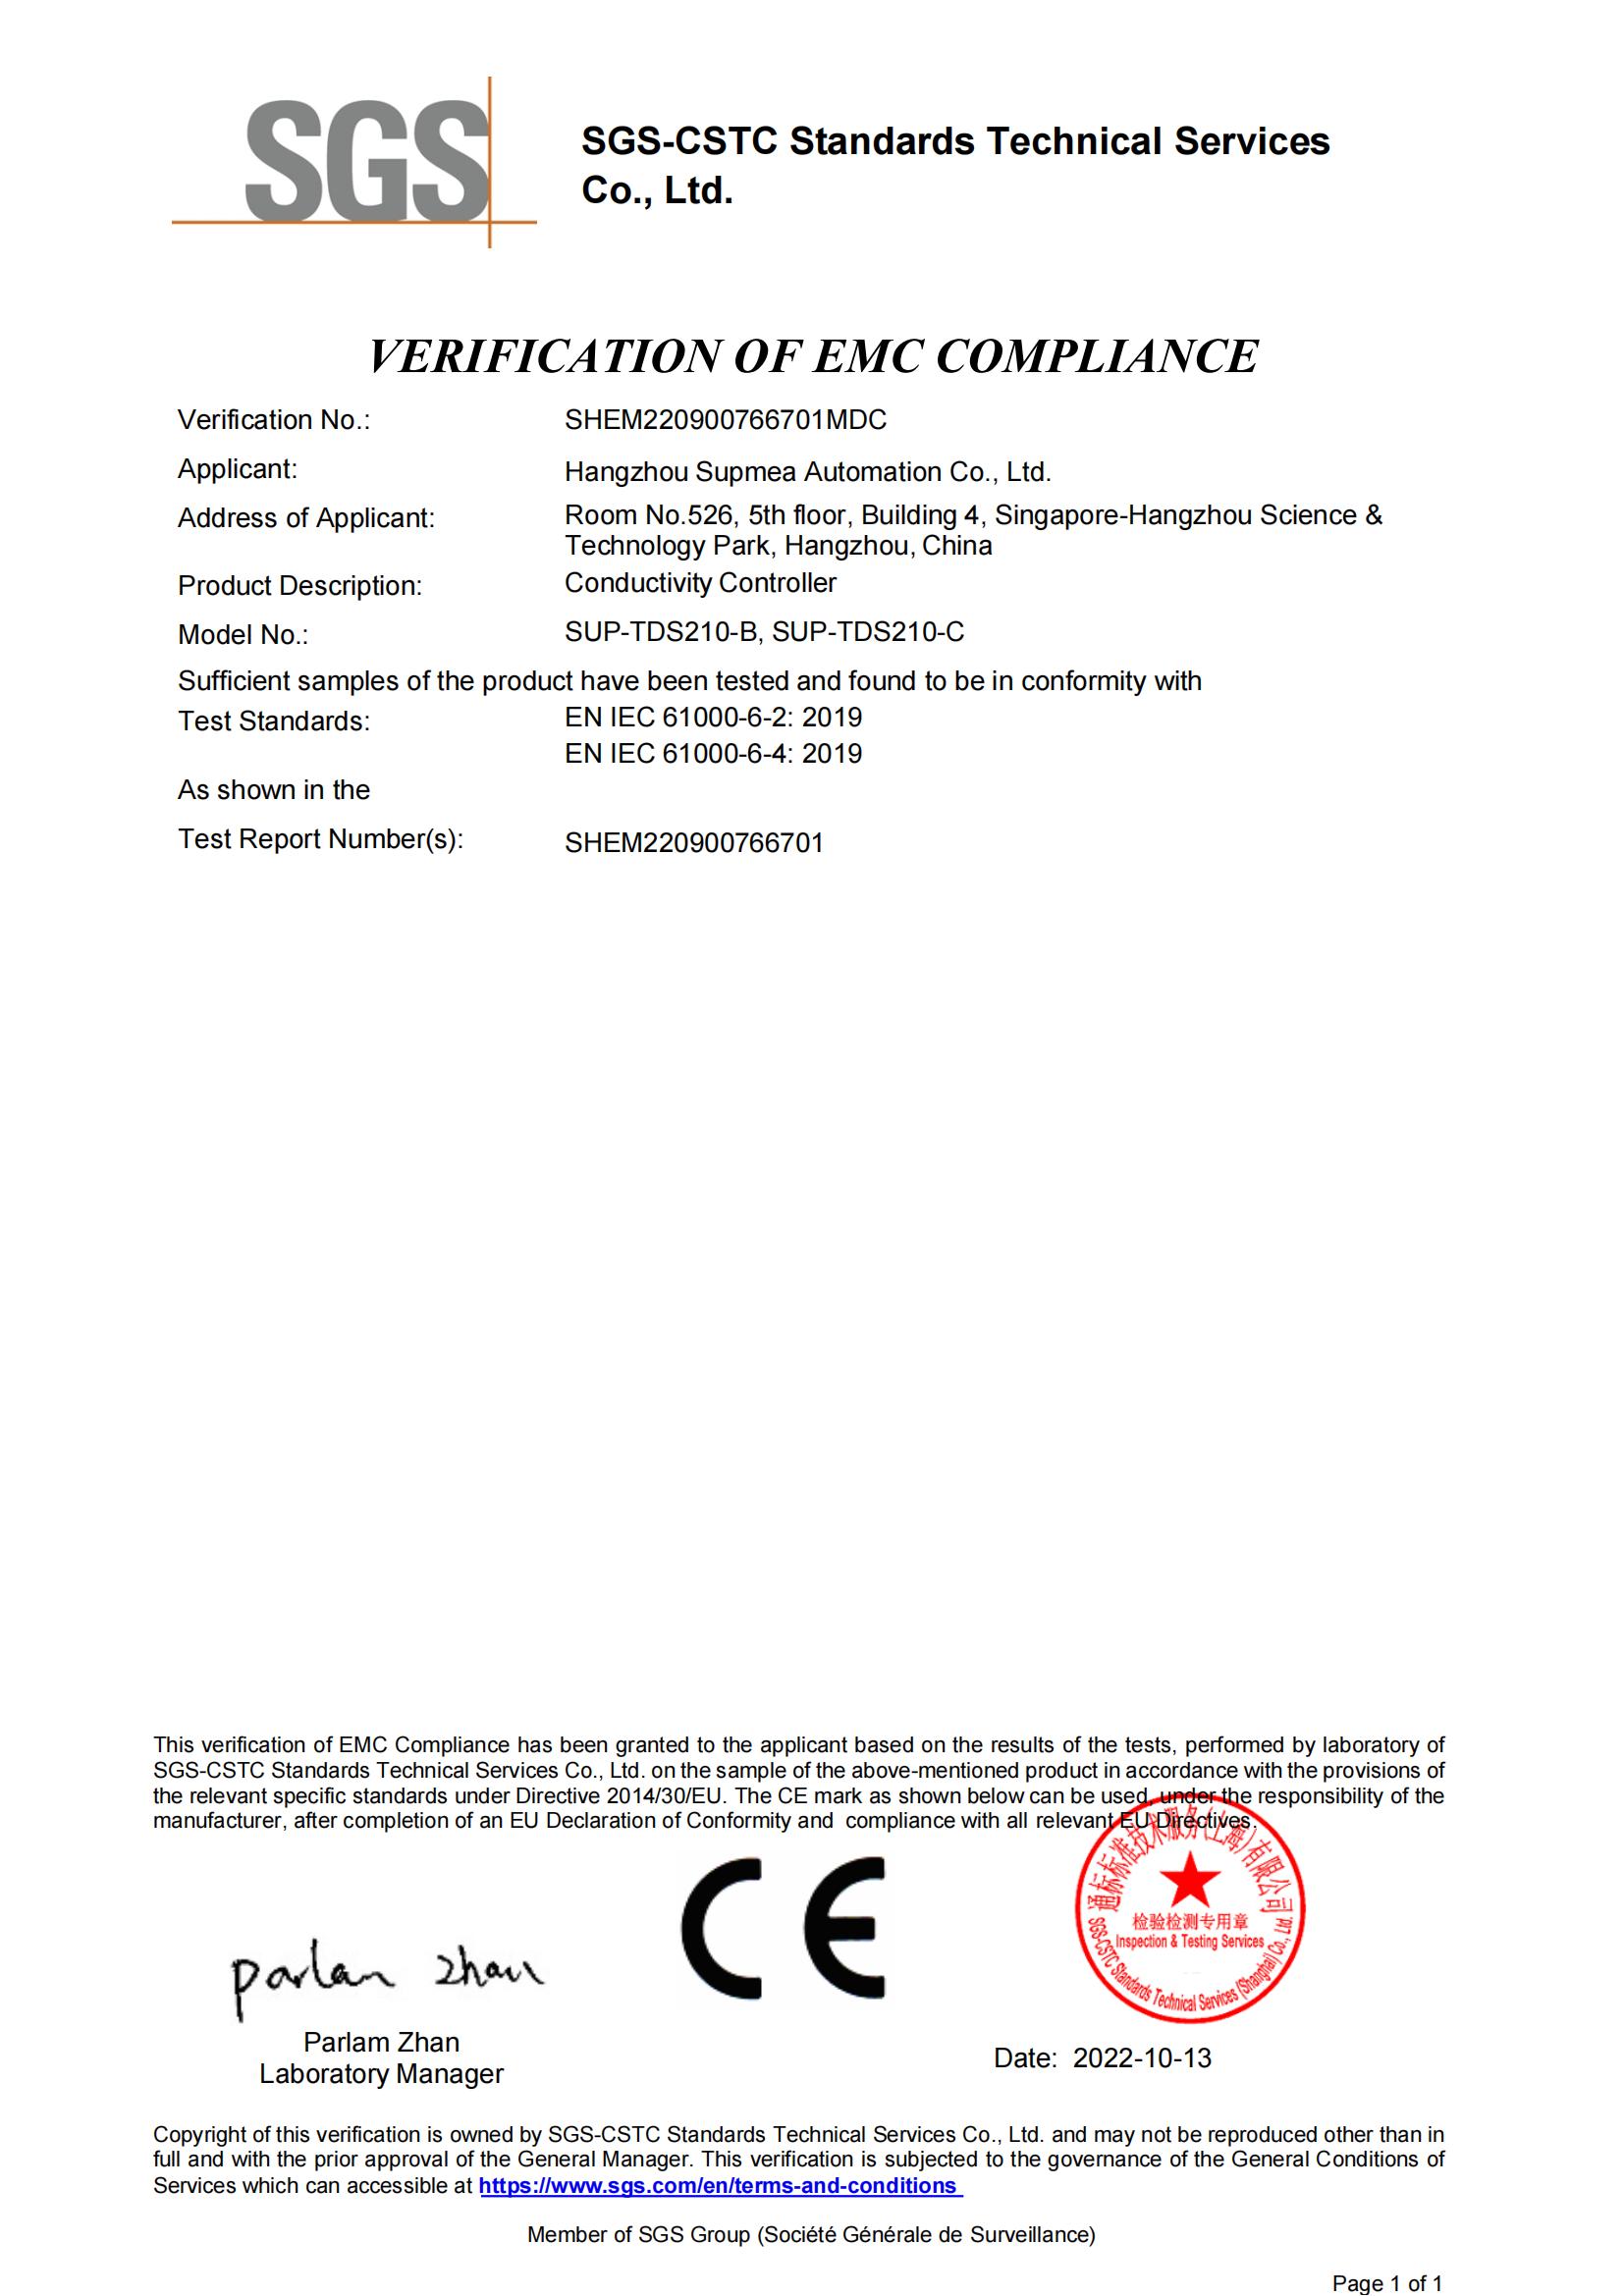 CE certificate (SGS) - conductivity controller